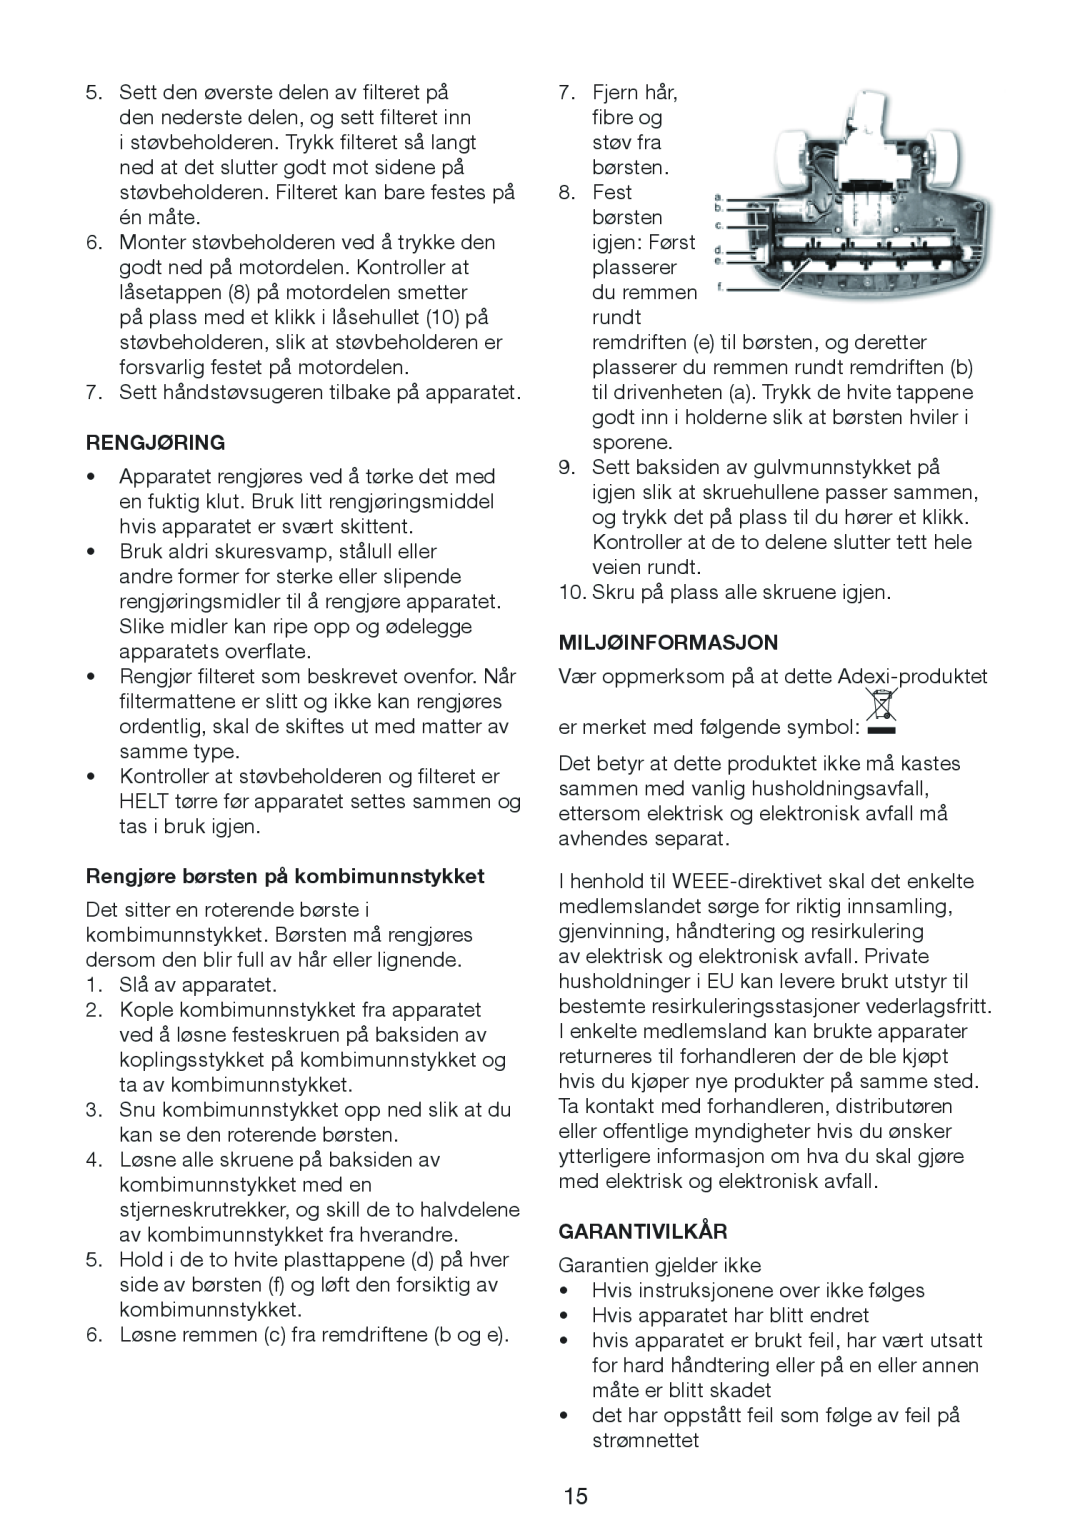 Melissa 640-132 manual Rengjøring, Rengjøre børsten på kombimunnstykket, Miljøinformasjon, Garantivilkår 